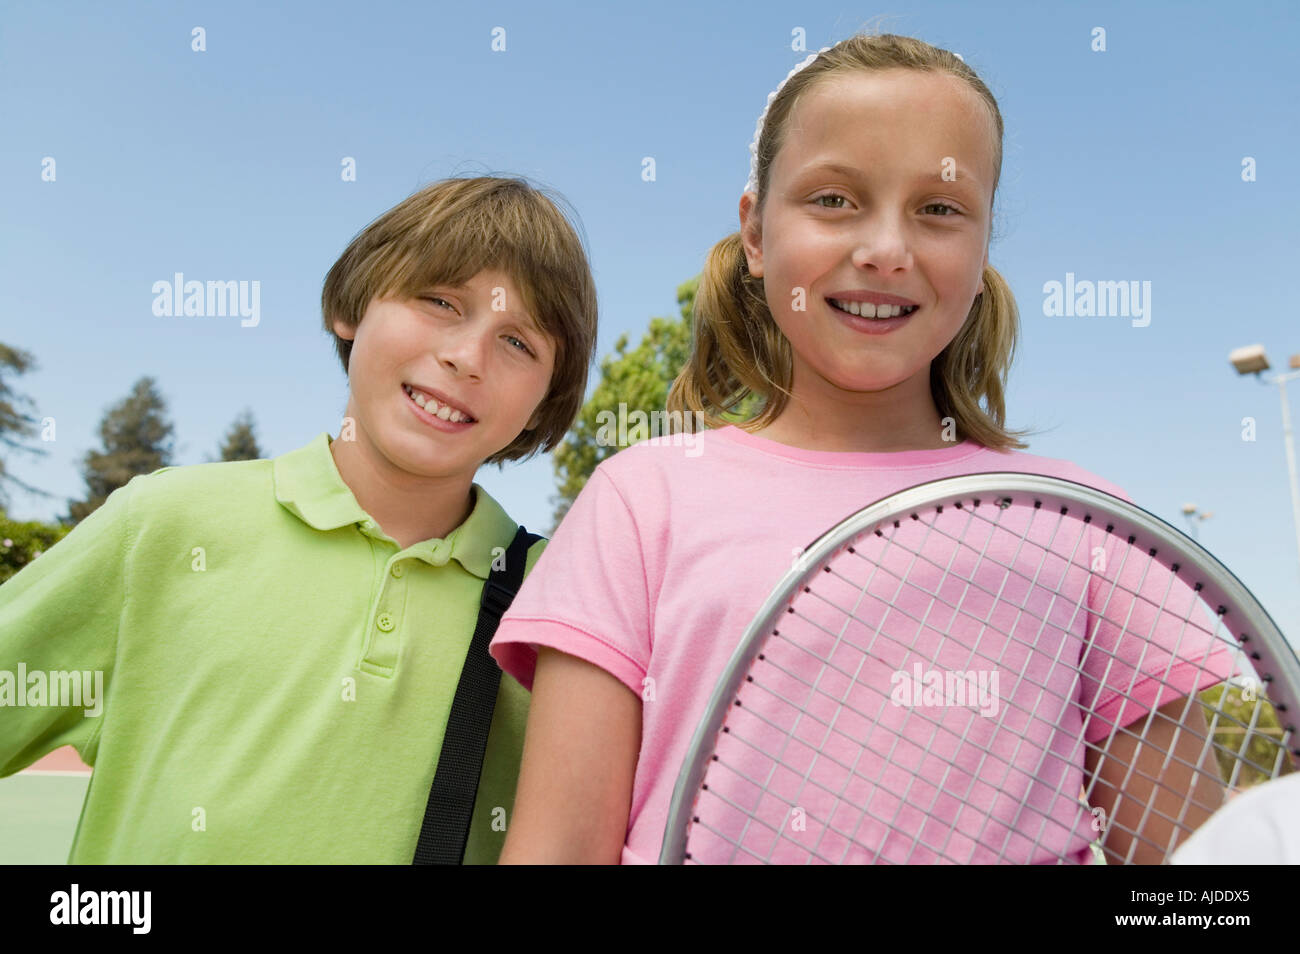 Fratello e Sorella con la racchetta da tennis presso il campo da tennis, ritratto, close up Foto Stock